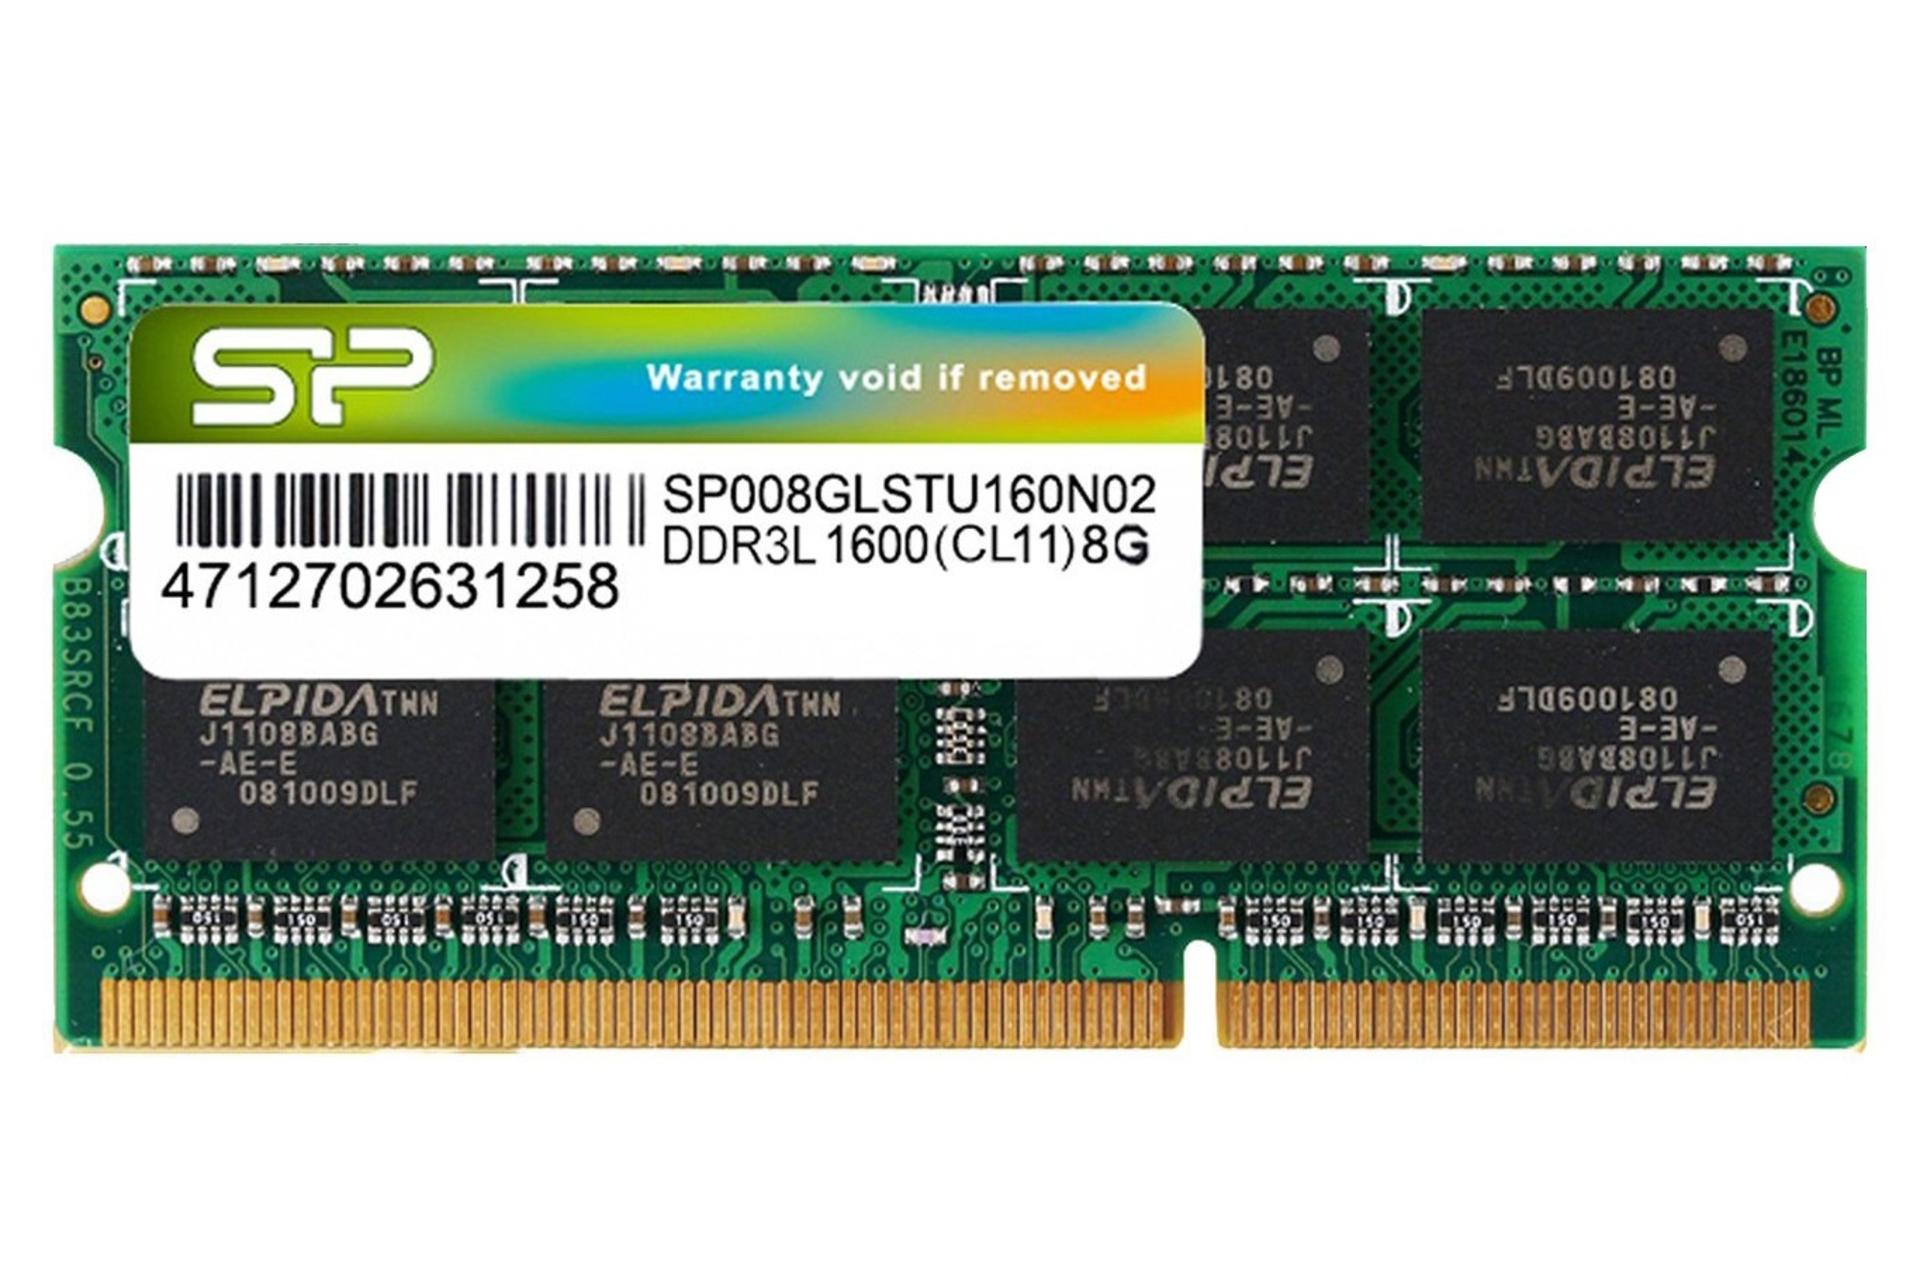 رم سیلیکون پاور SP008GLSTU160N02 ظرفیت 8 گیگابایت از نوع DDR3L-1600